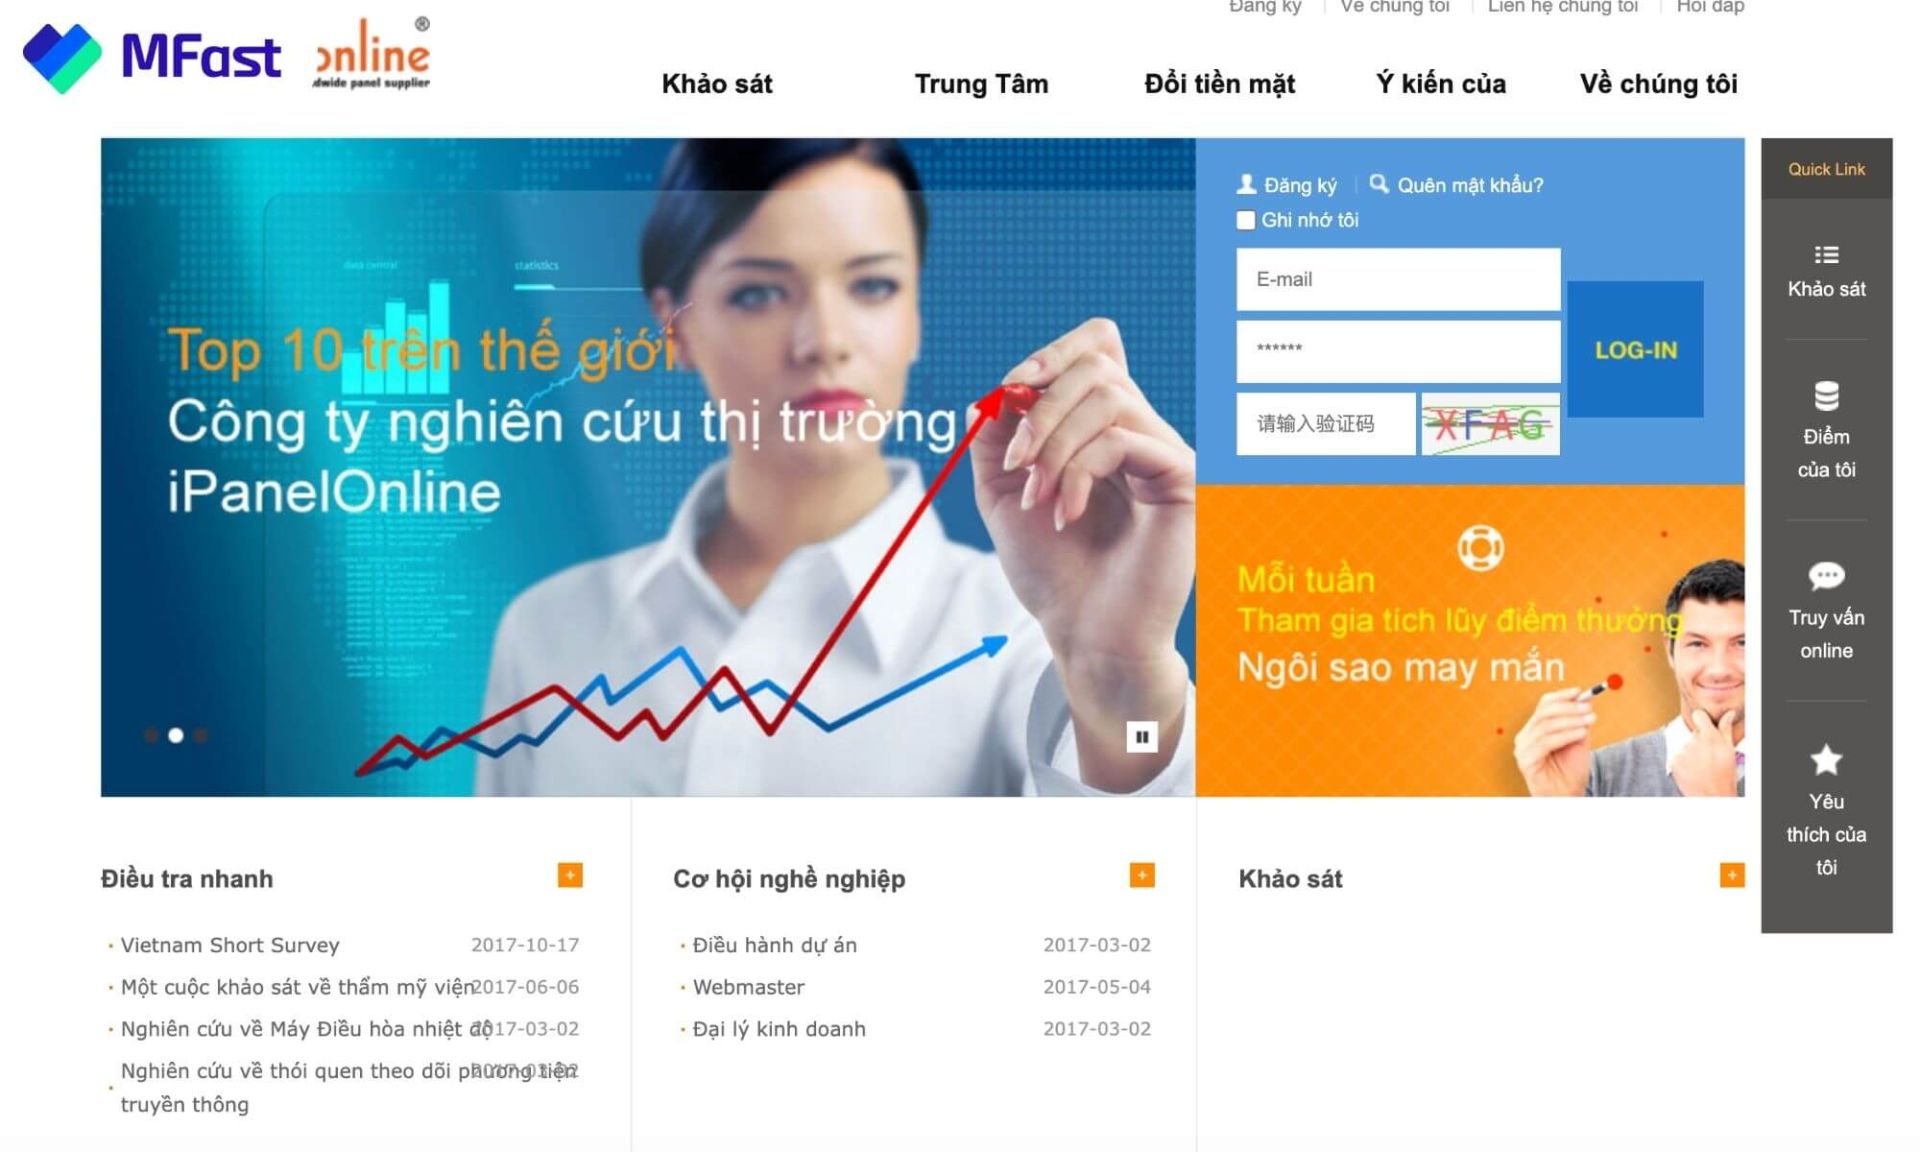 Khảo sát kiếm tiền với iPanelOnline Việt Nam